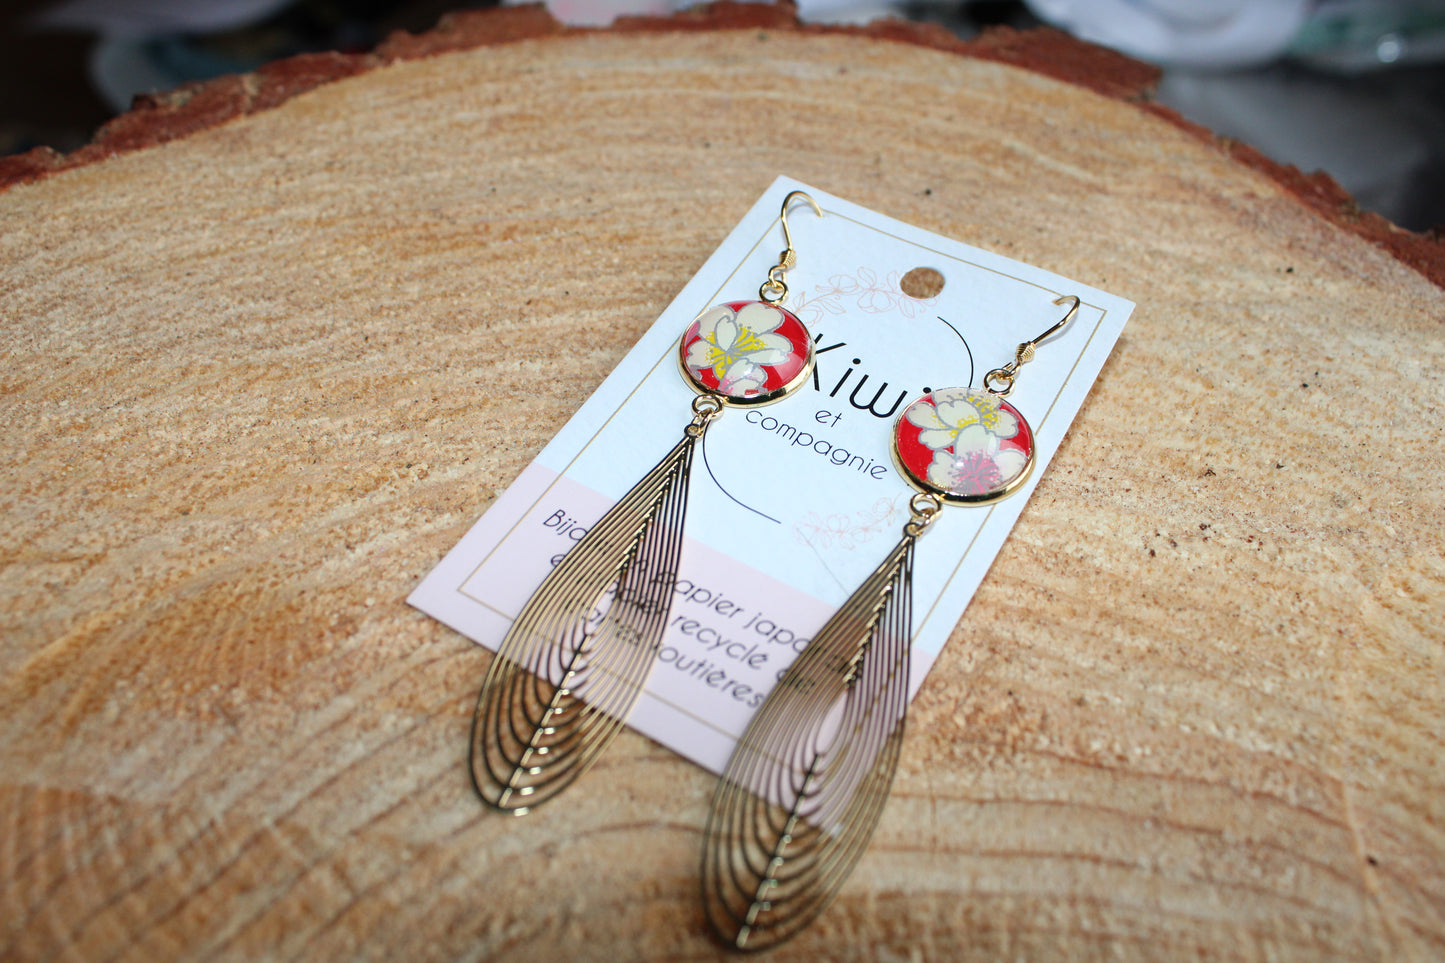 Boucles d'oreilles cabochons ronds 16mm - Acier inoxydable doré - papier japonais fleurs blanches et roses, fond rouge - breloque filigrane plume